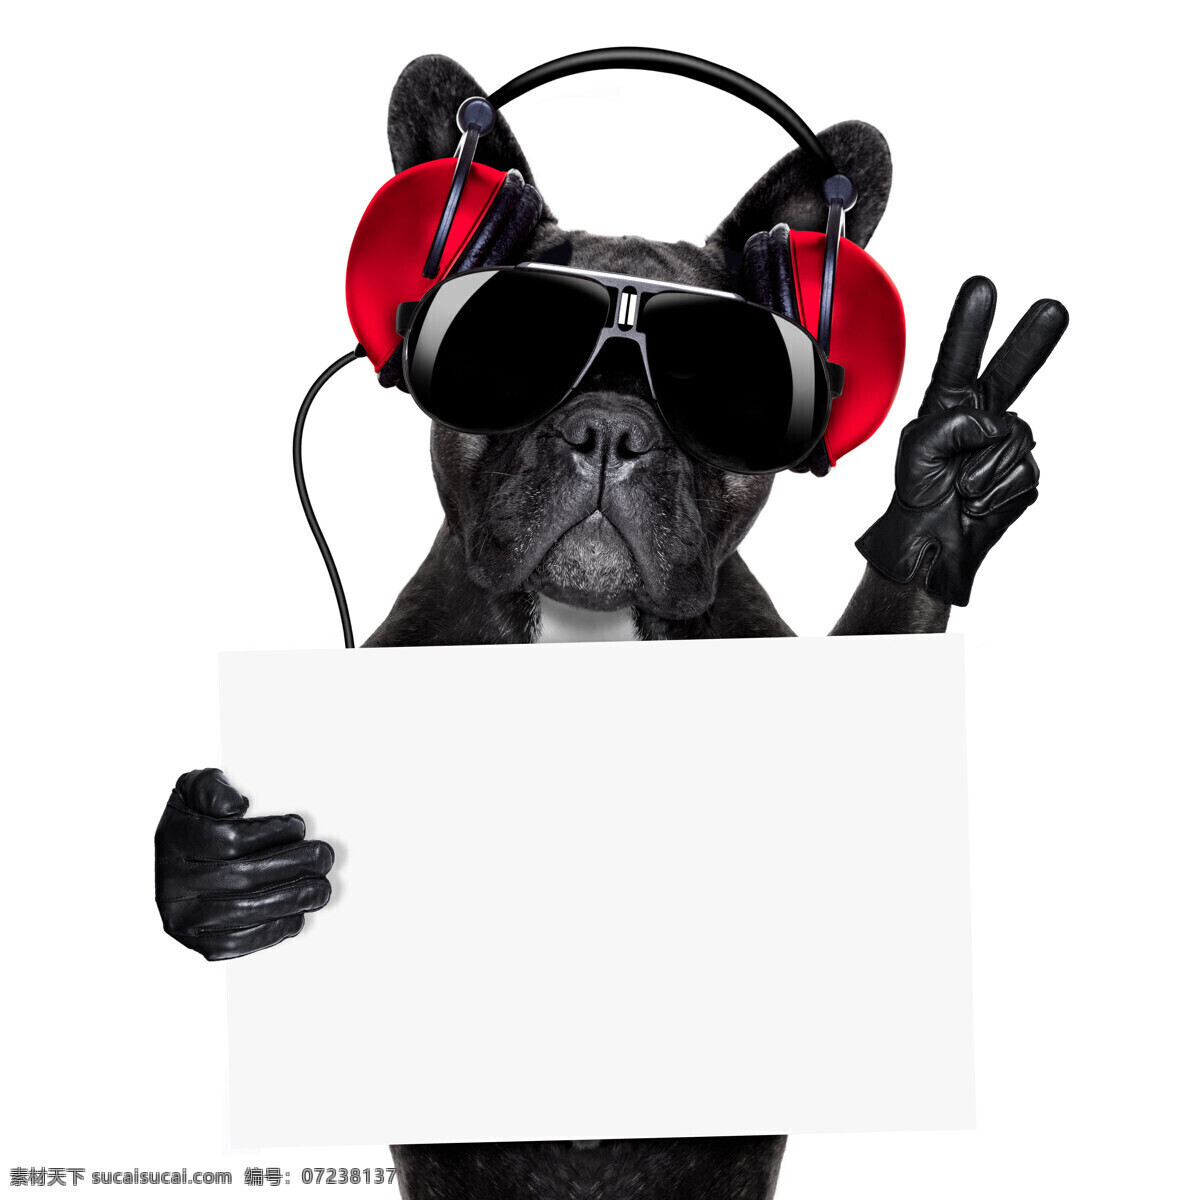 卡片 狗 黑色 耳机 宠物 动物 狗狗图片 生物世界